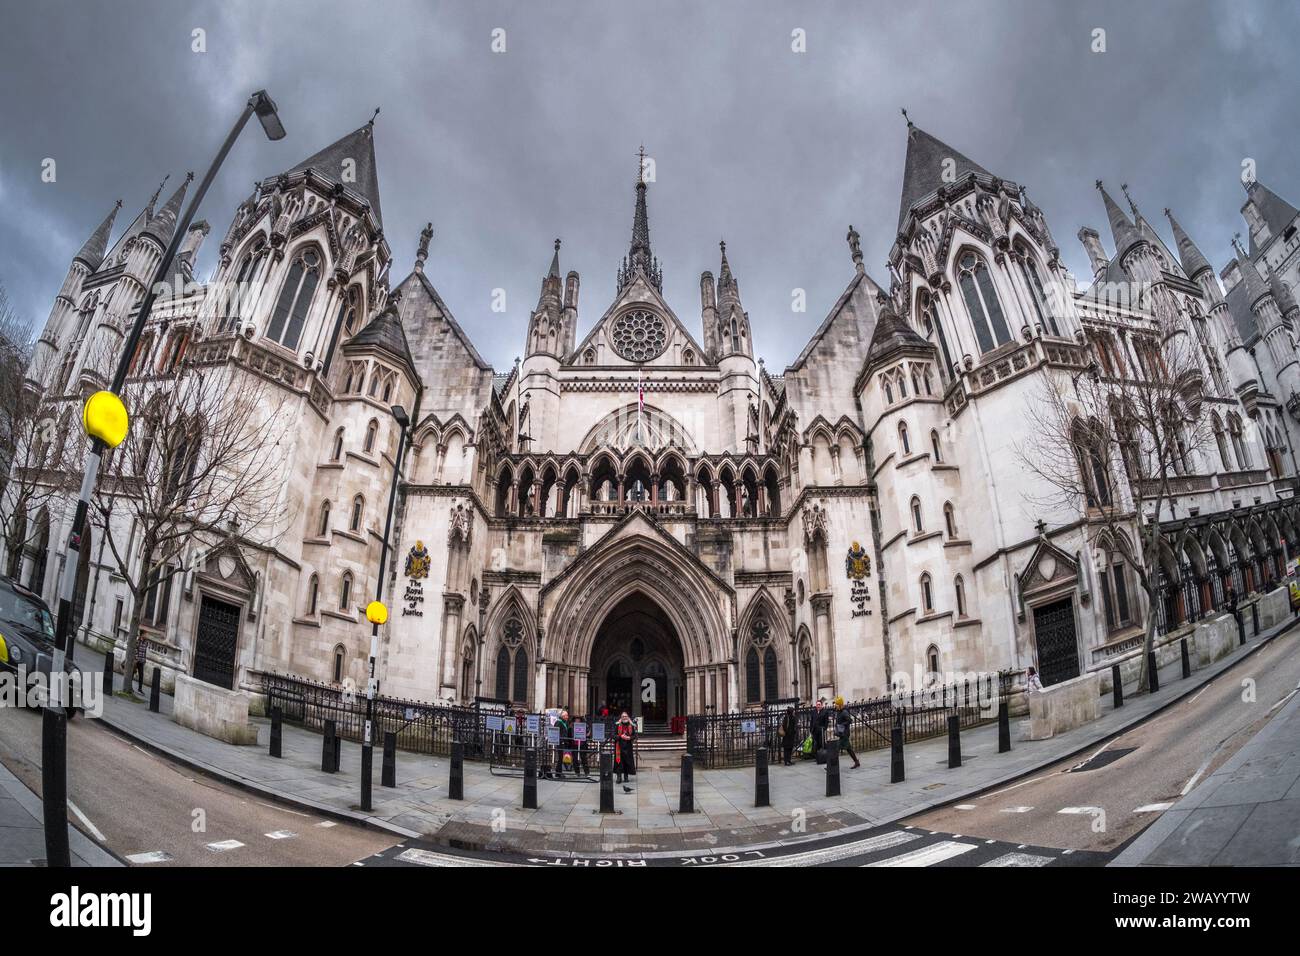 Die Royal Courts of Justice, The Law Courts, Strand, London, UK. Düsterer, elender Regen bedroht den Himmel. Stockfoto